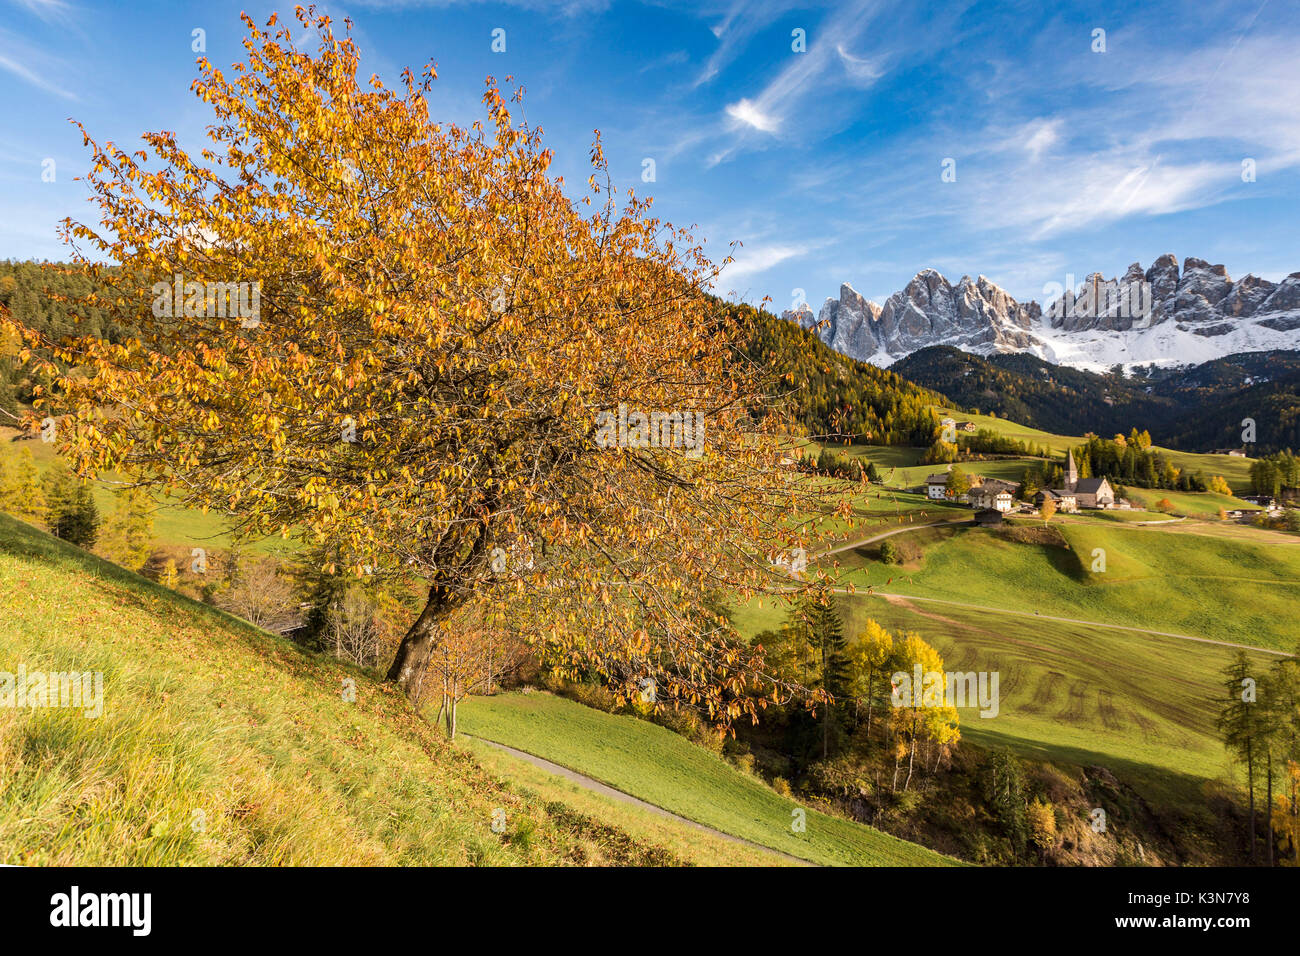 Herbstliche Kirschbaum mit Santa Maddalena Dorf und Geisler Dolomiten Gipfeln im Hintergrund. Santa Maddalena, Funes, Bozen, Trentino Alto Adige, Südtirol, Italien, Europa. Stockfoto